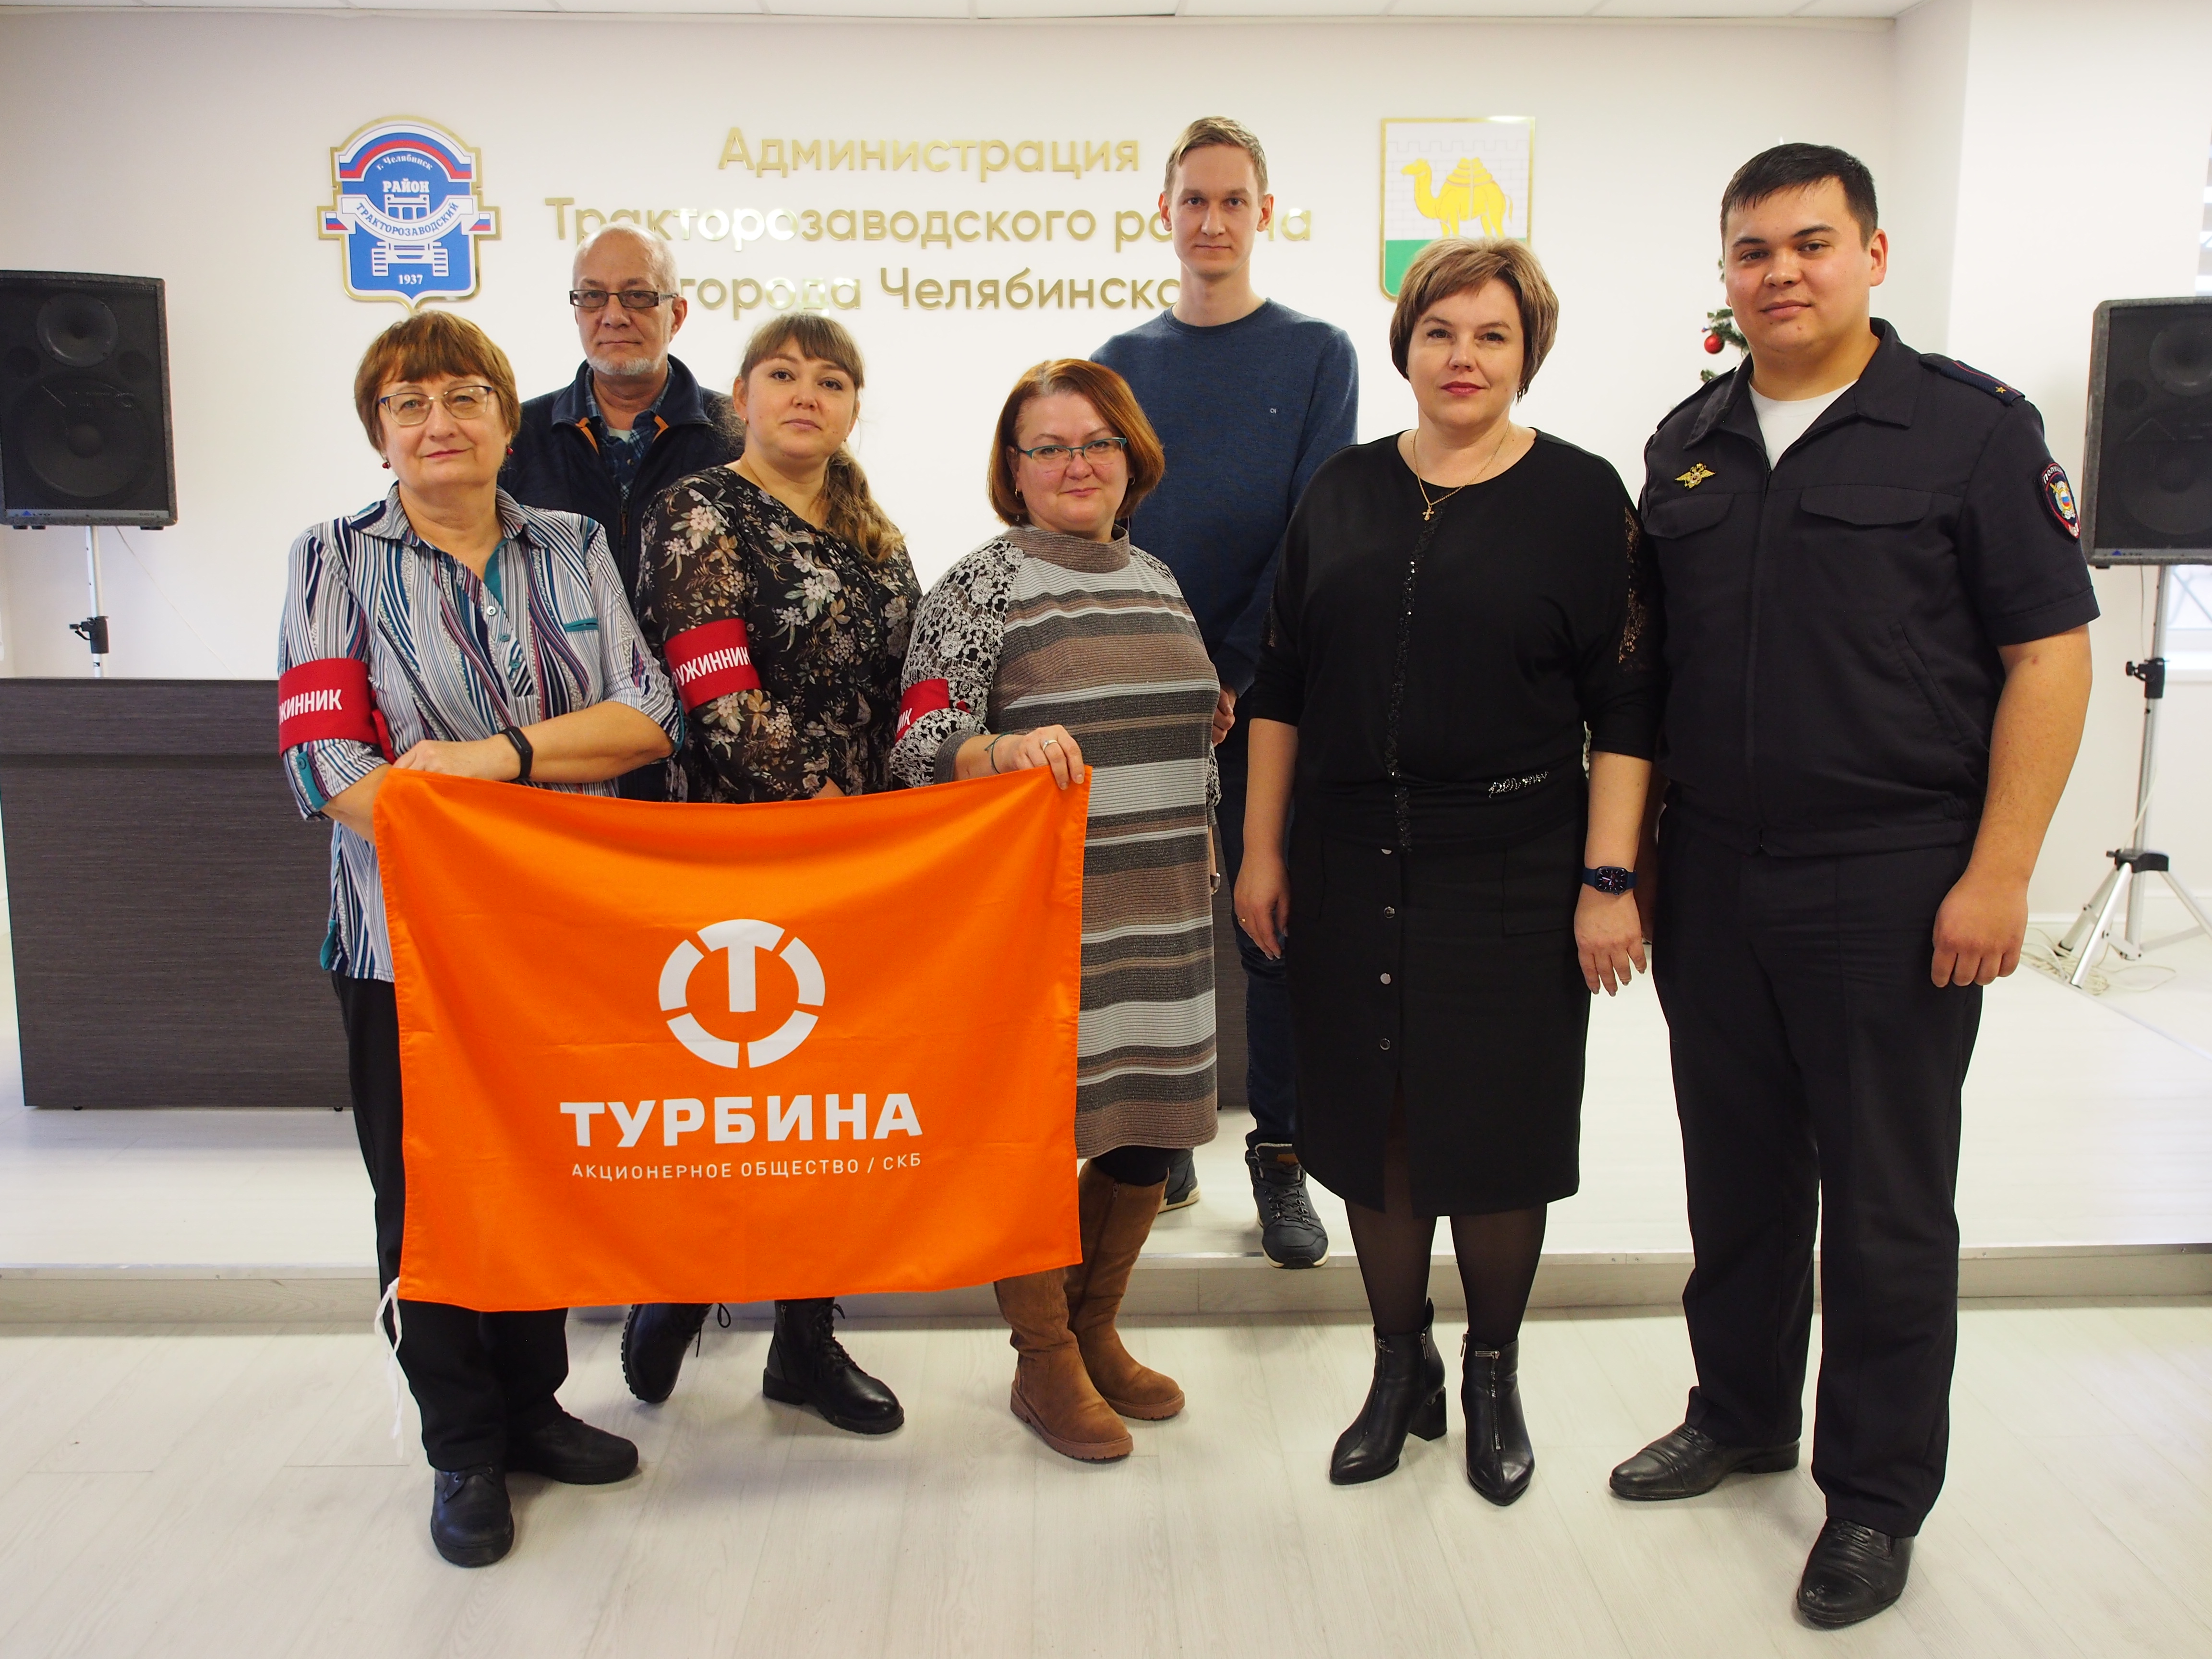 В Тракторозаводском районе образовалась новая добровольная народная дружина «Турбина»